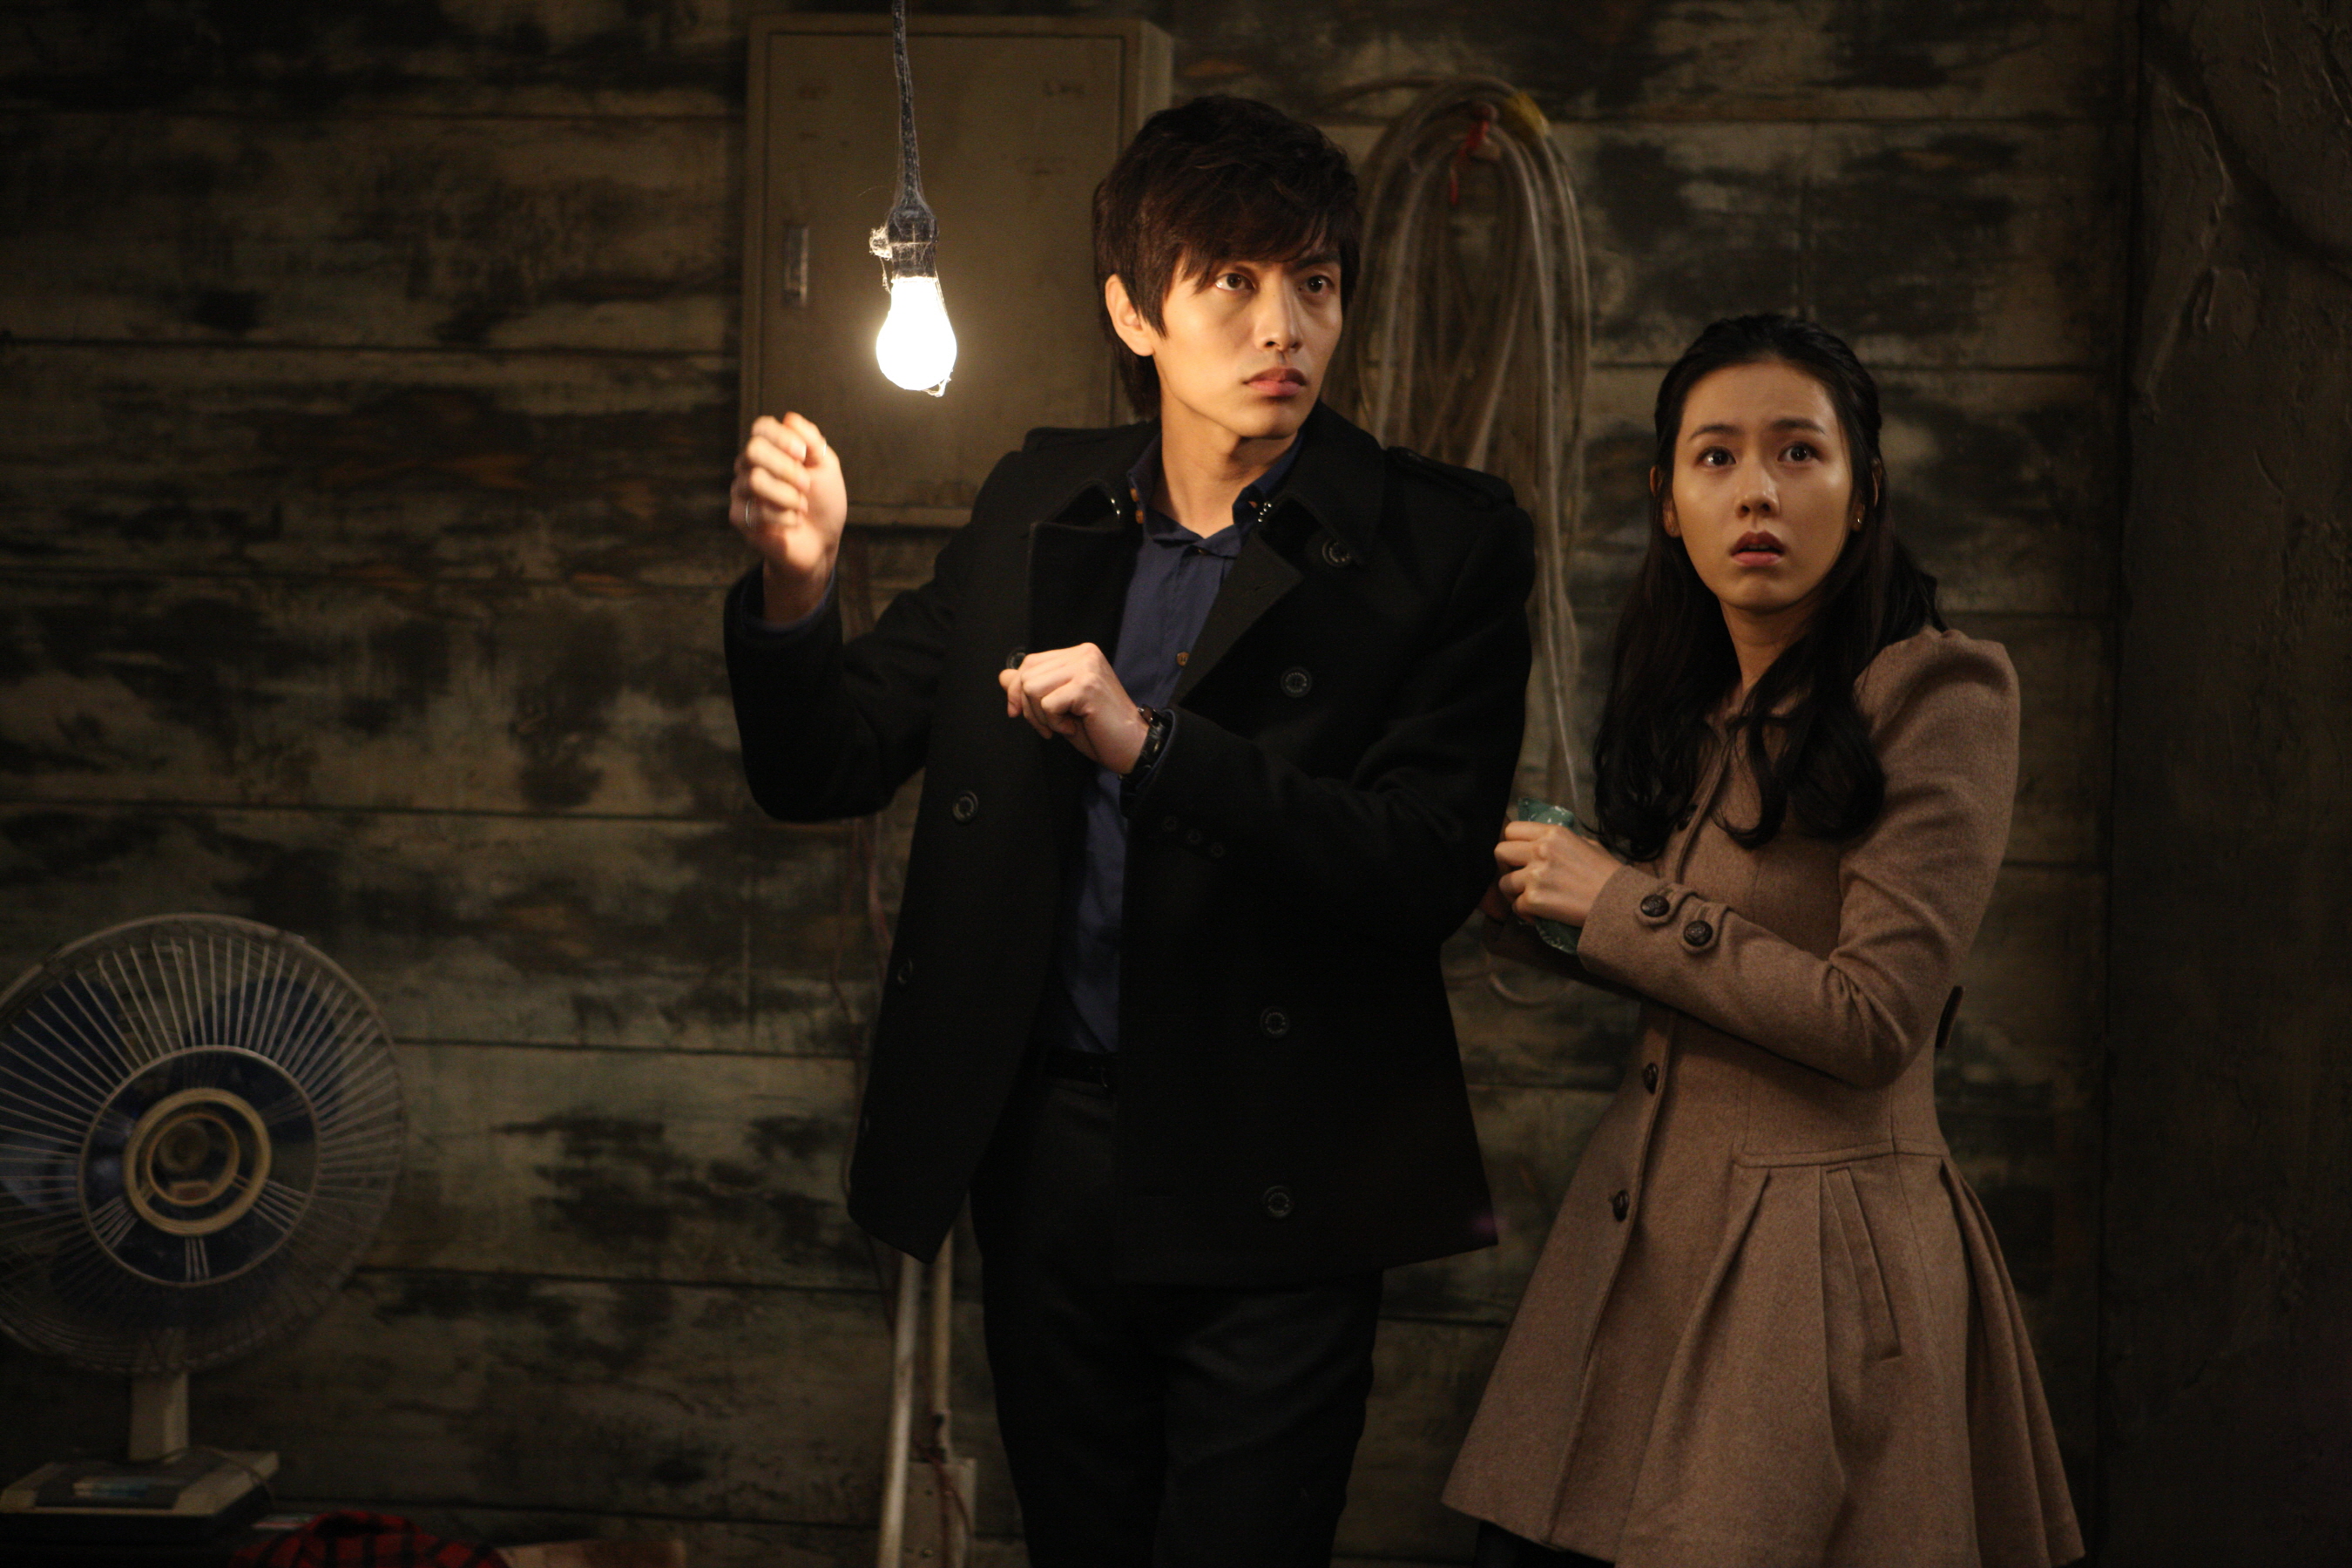 Still of Ye-jin Son and Min-ki Lee in O-ssak-han yeon-ae (2011)